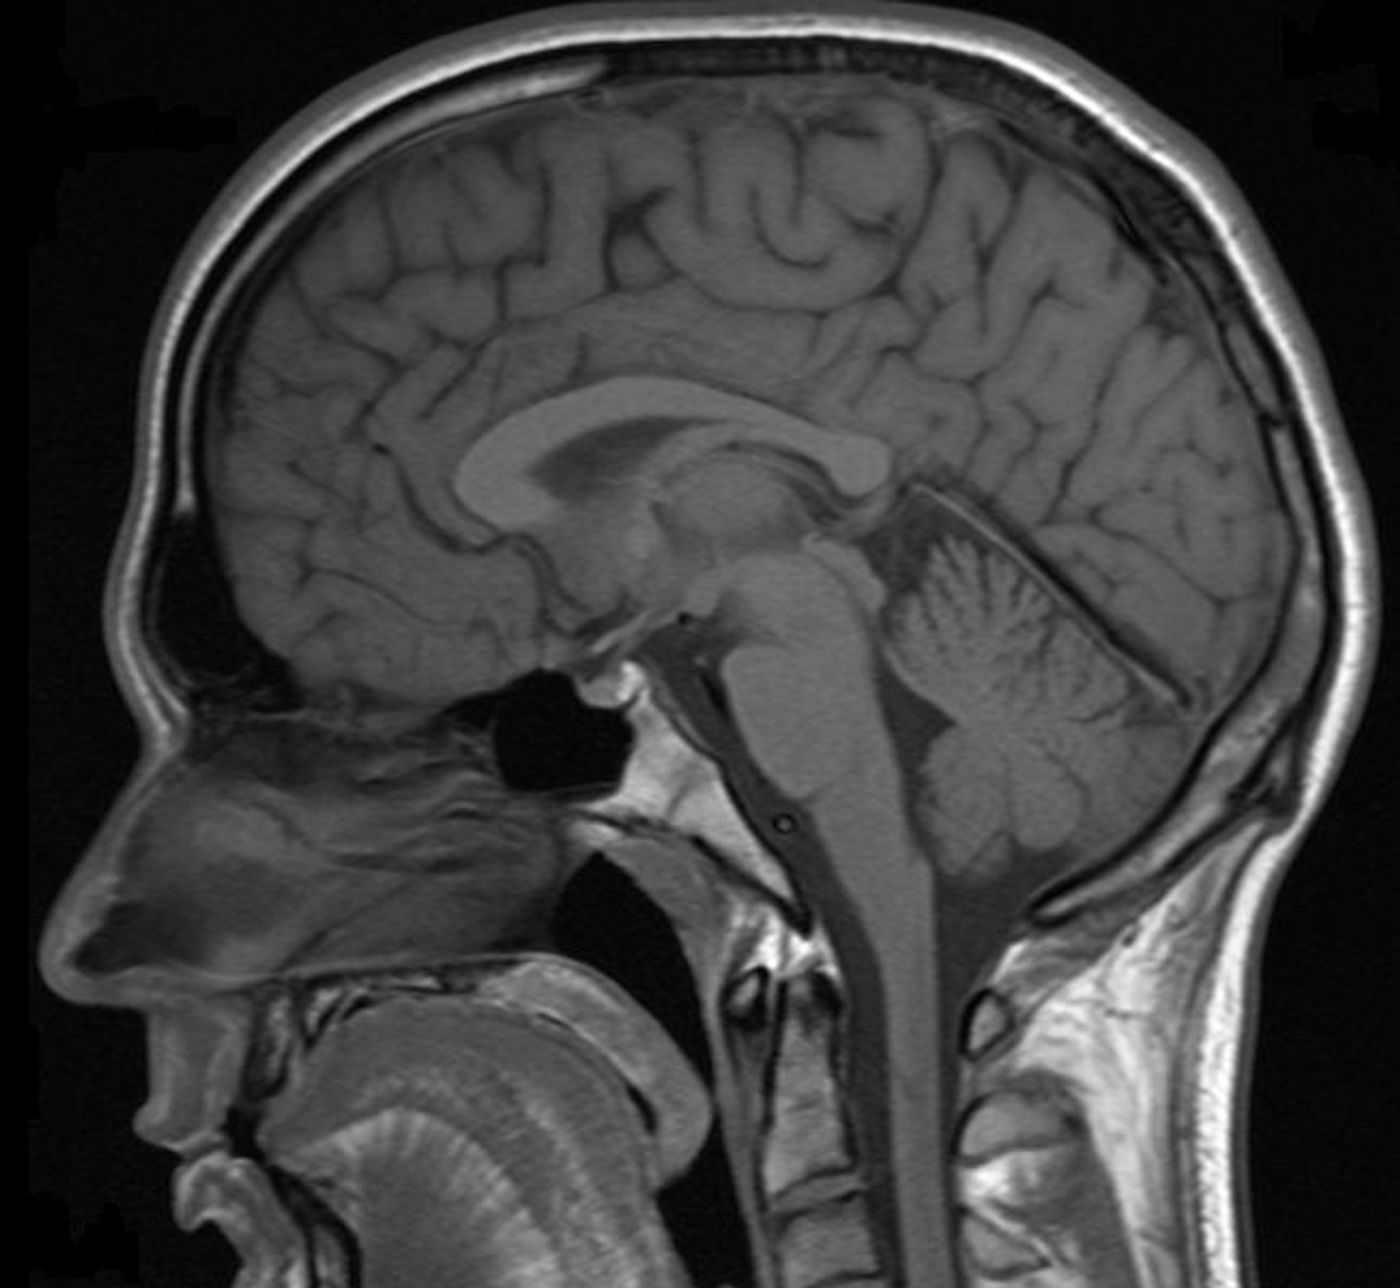 MRI scan of a human head. Credit: Helmut Januschka